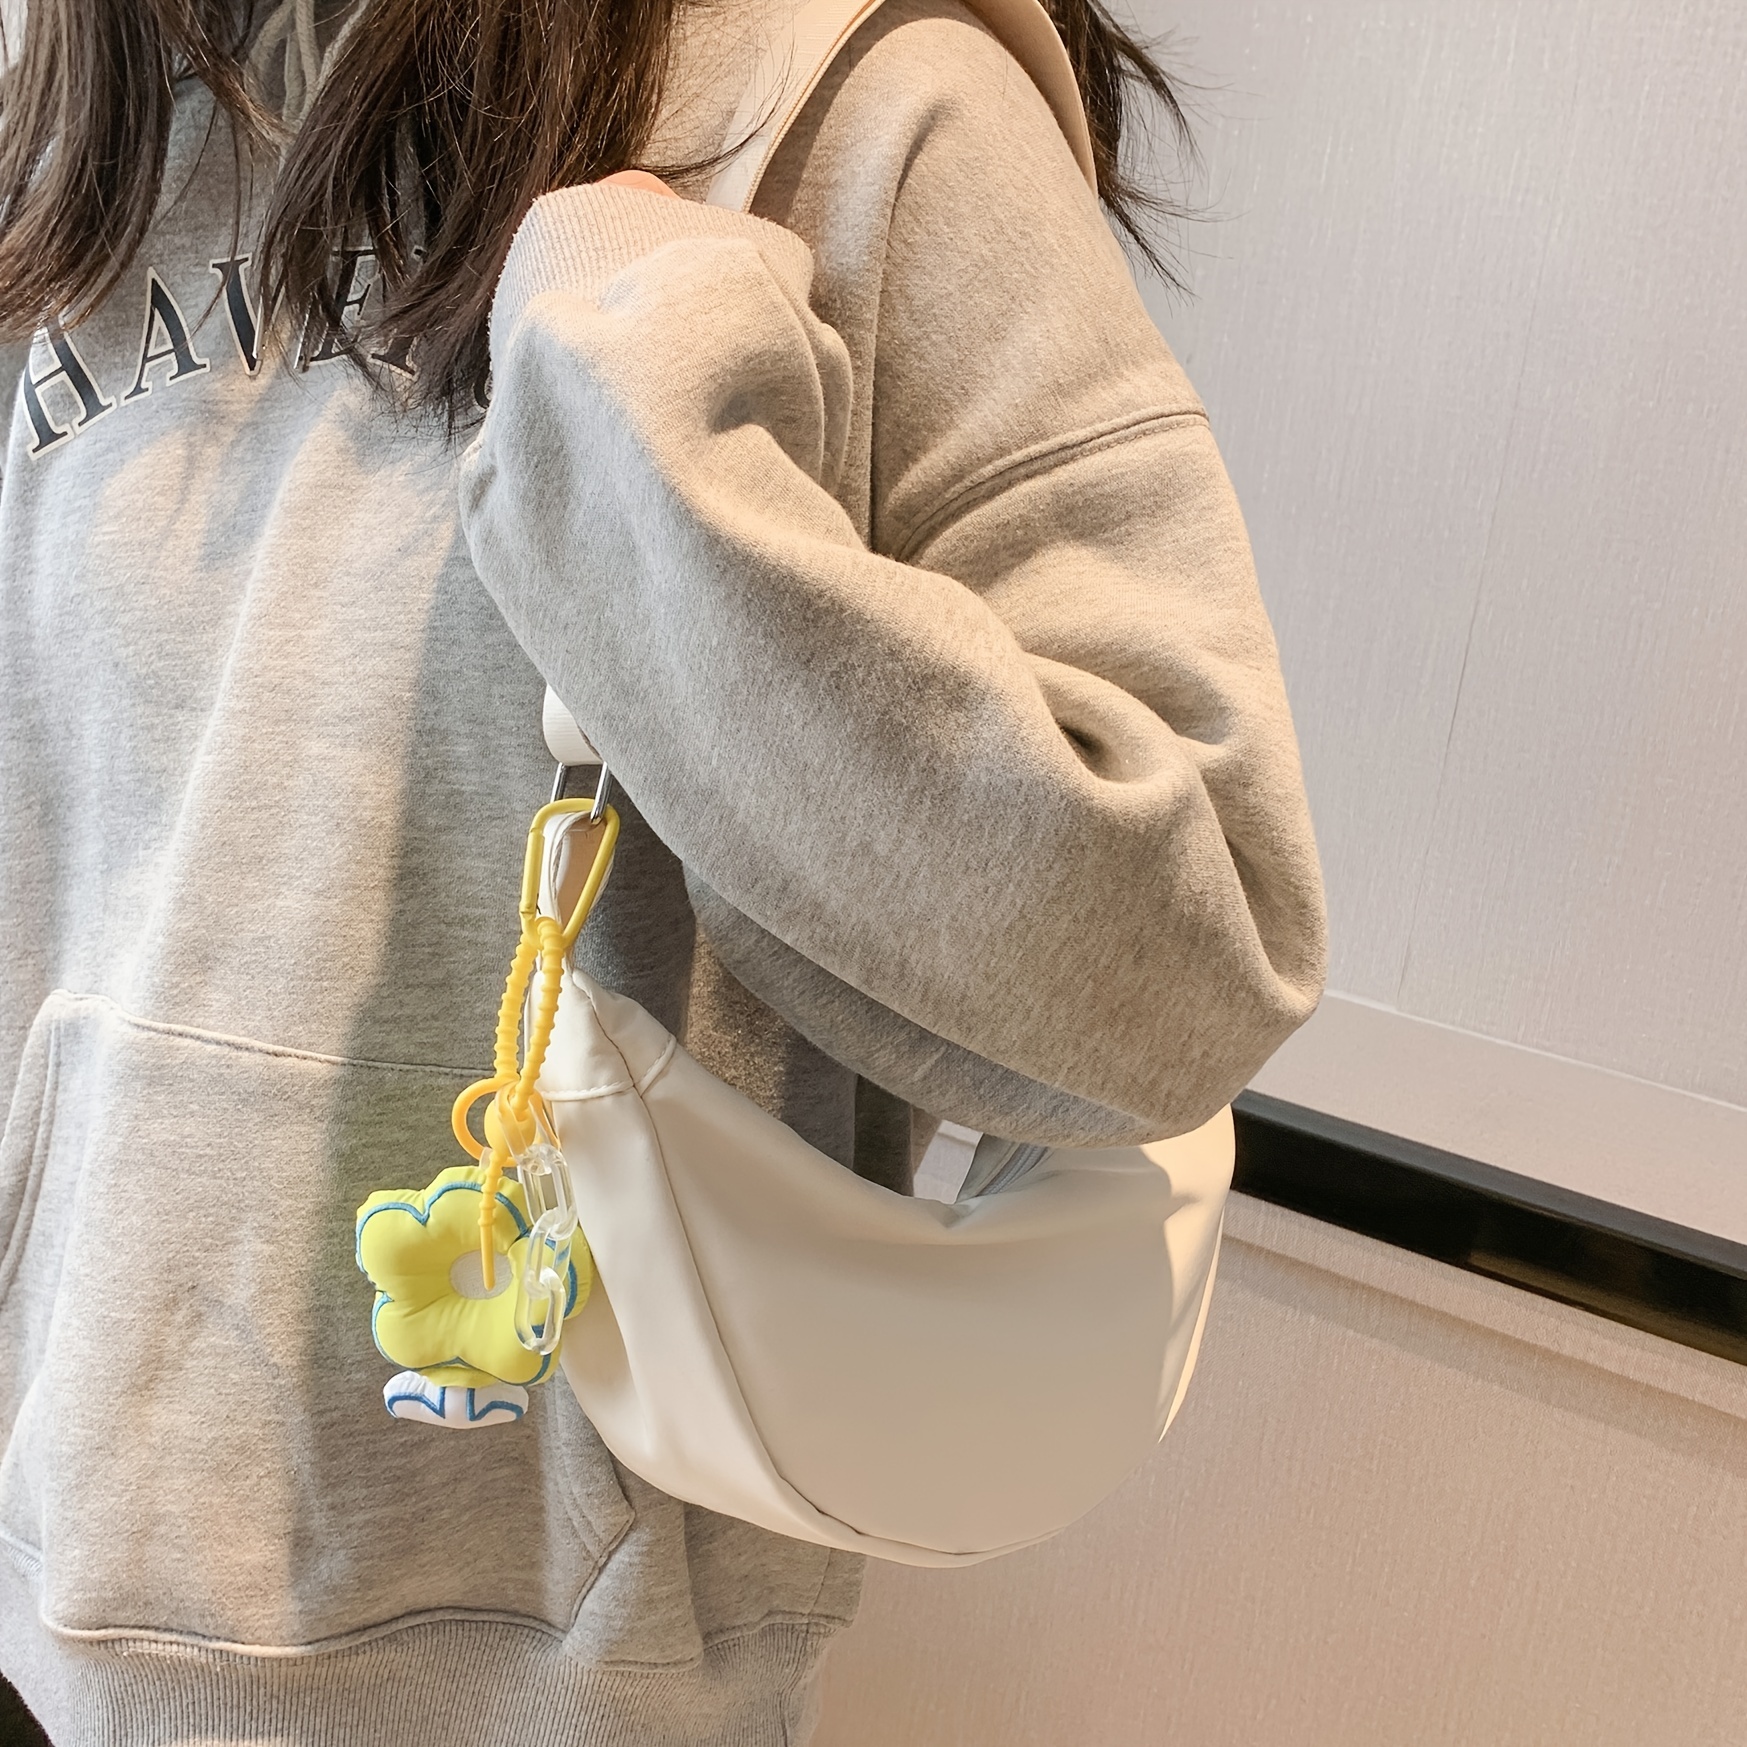 Pu Leather Sling Bag Korean Crossbody Tas Bahu Wanita Shoulder Bag Big For  Women - Buy Shoulder Bag Big,Sling Bag Korean,Tas Bahu Wanita Product on